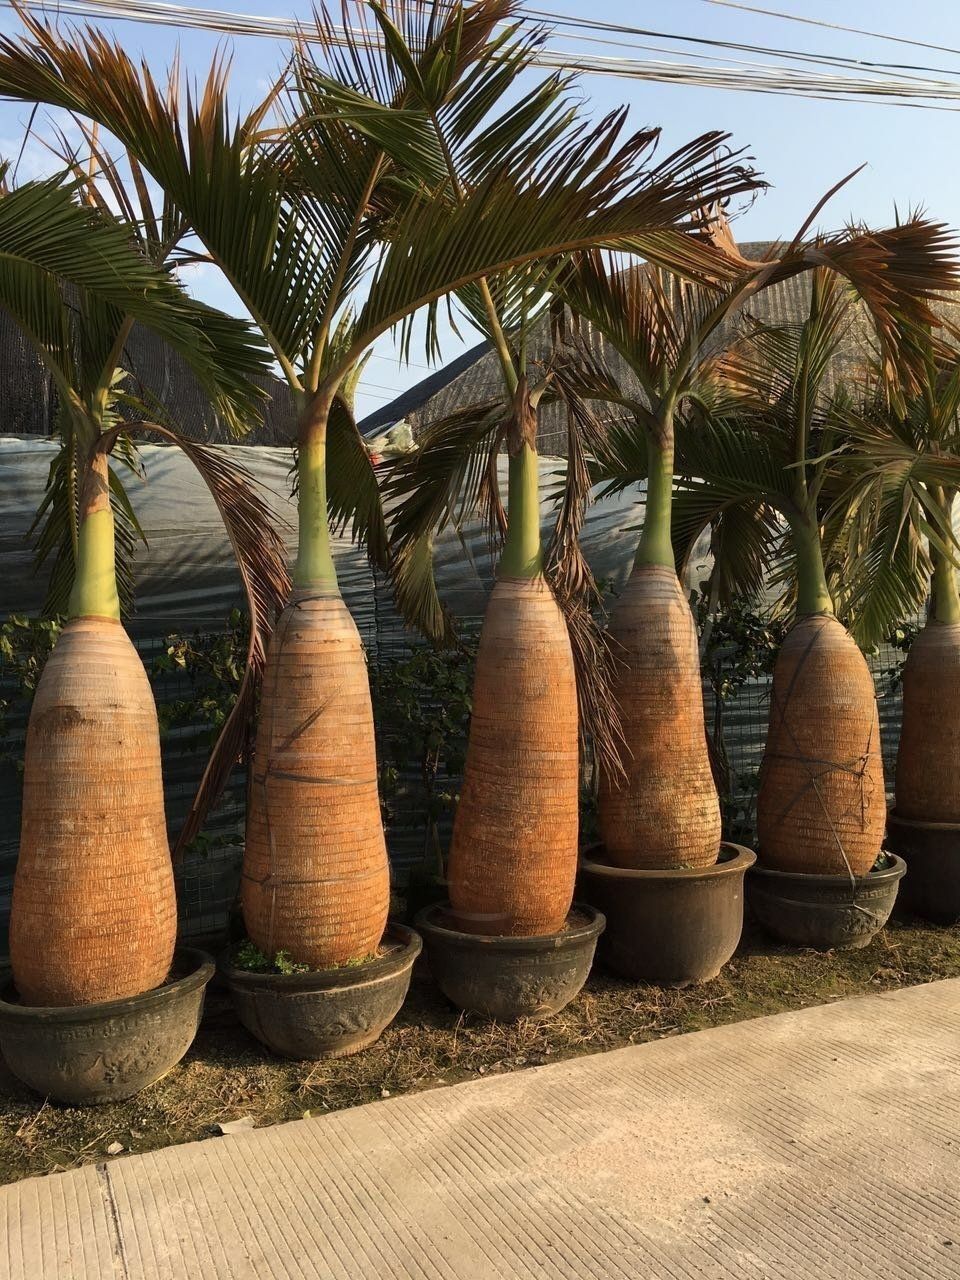 Пальма бутылочная «hyophorbe» (высота 3 метра)